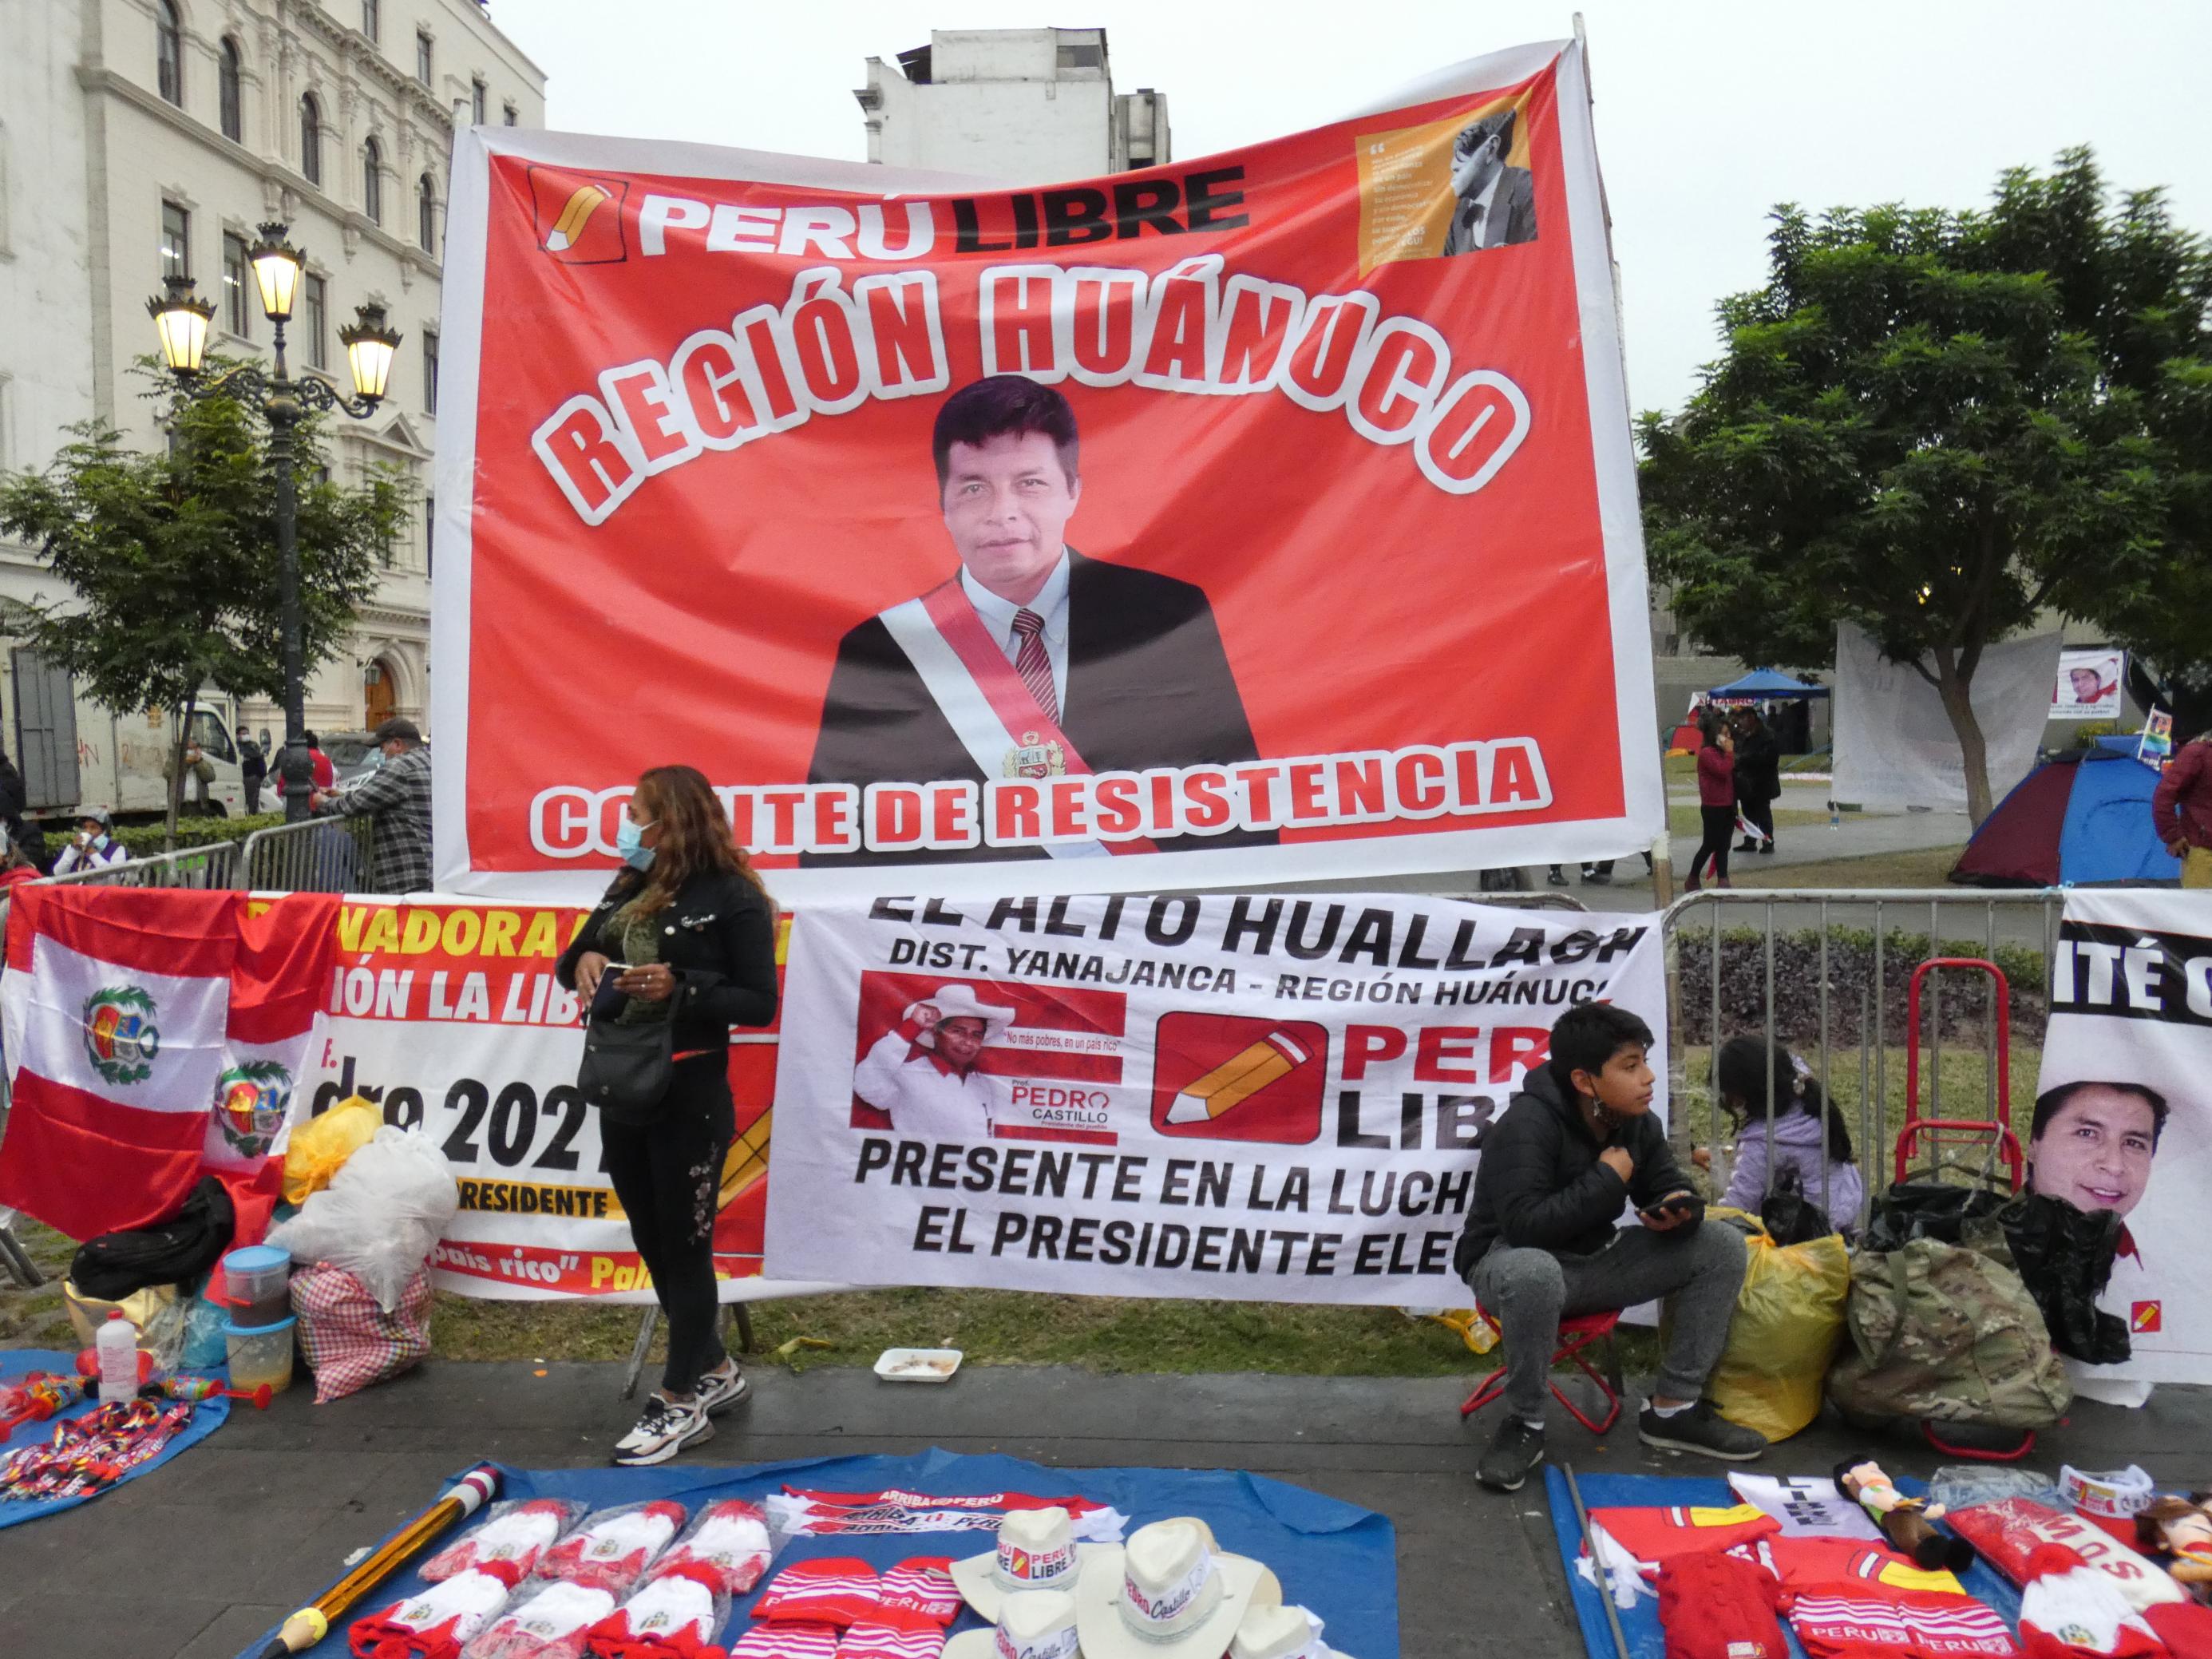 Große rote Banderole, darauf ein Mann mit einer Präsidentenschärpe. Auf dem Boden davor werden Devotionalien verkauft.